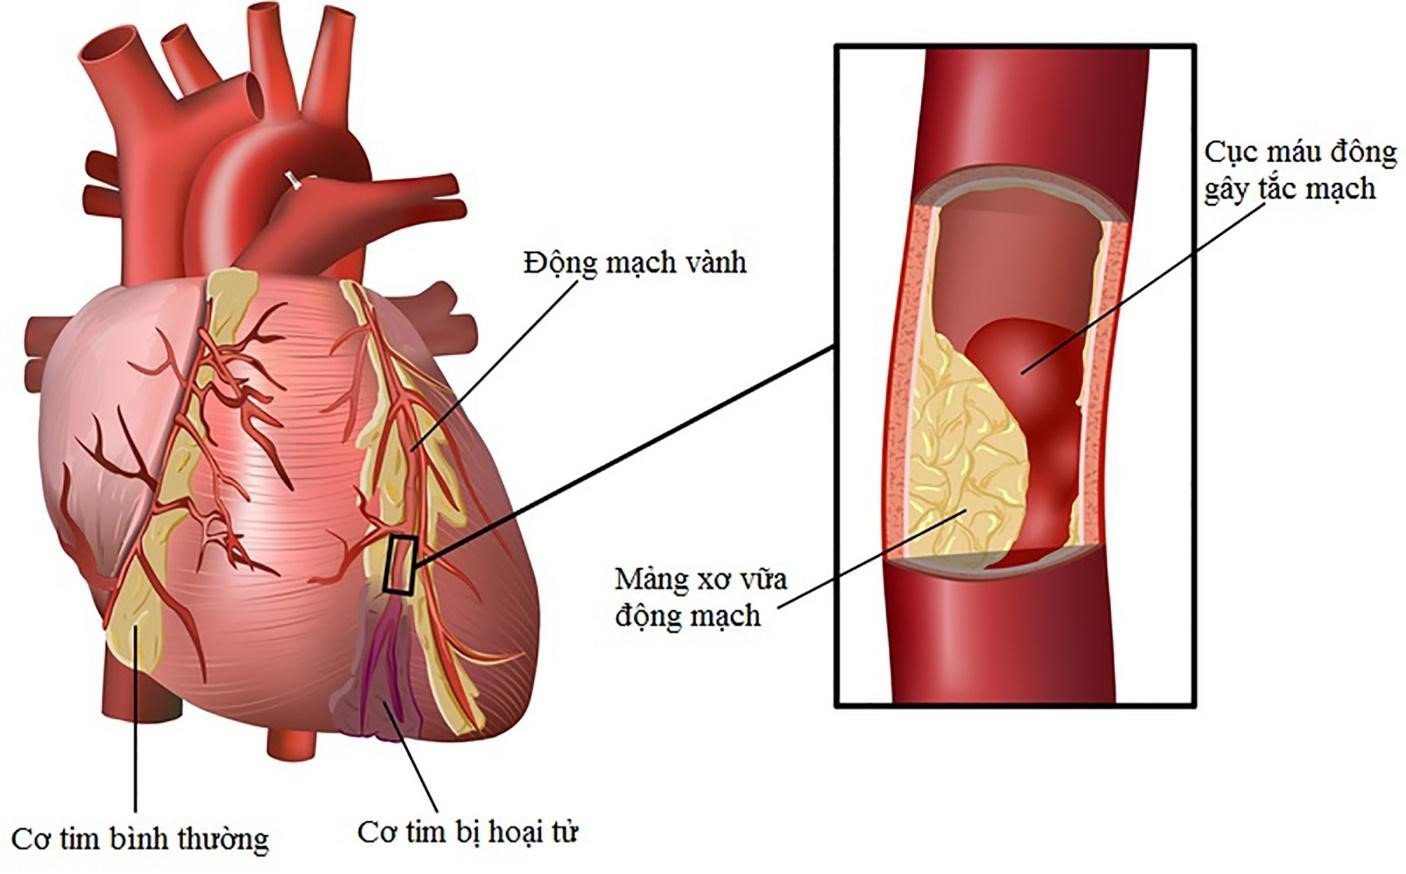 Hiện tượng rối loạn mỡ máu nếu kéo dài sẽ gây xơ vữa động mạch và tắc huyết khối